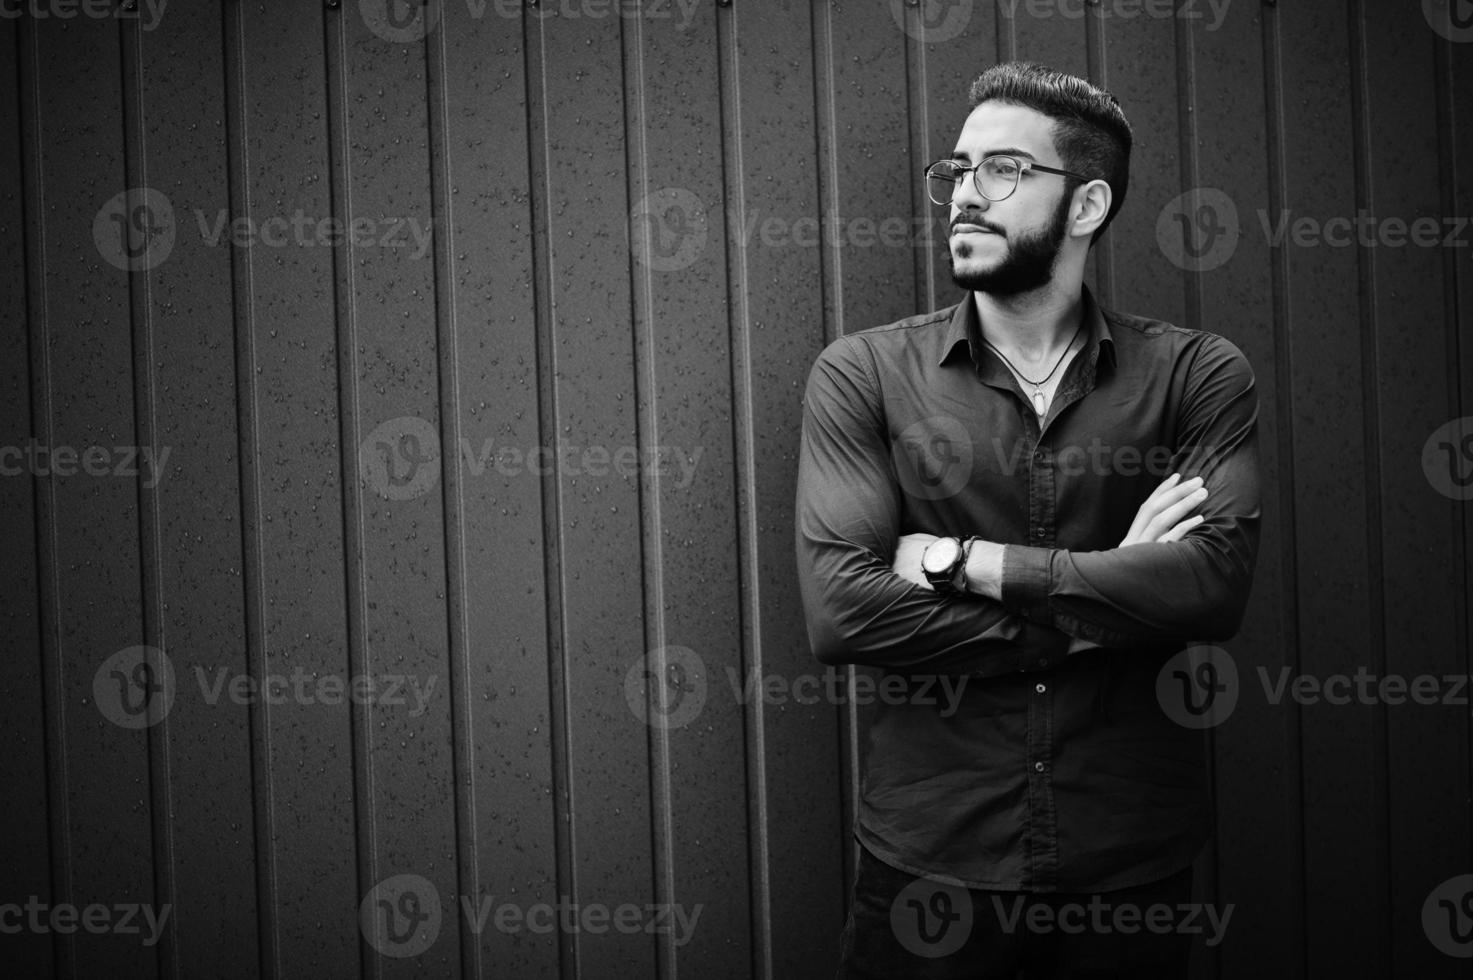 empresário do Oriente Médio usa camisa azul, óculos, contra a parede de aço. foto